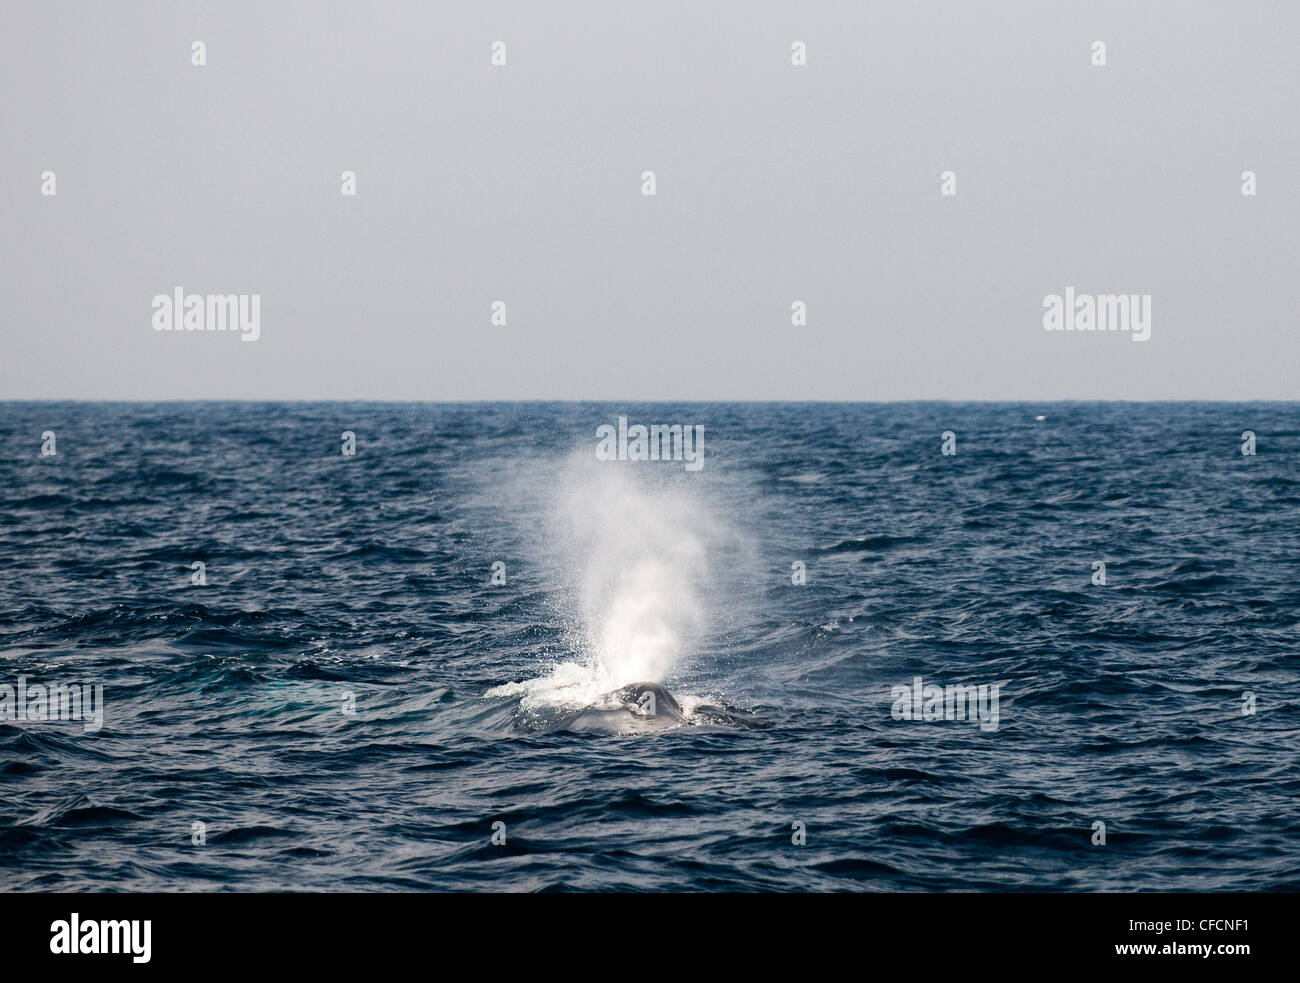 Una ballena azul en el océano Índico. Foto de stock